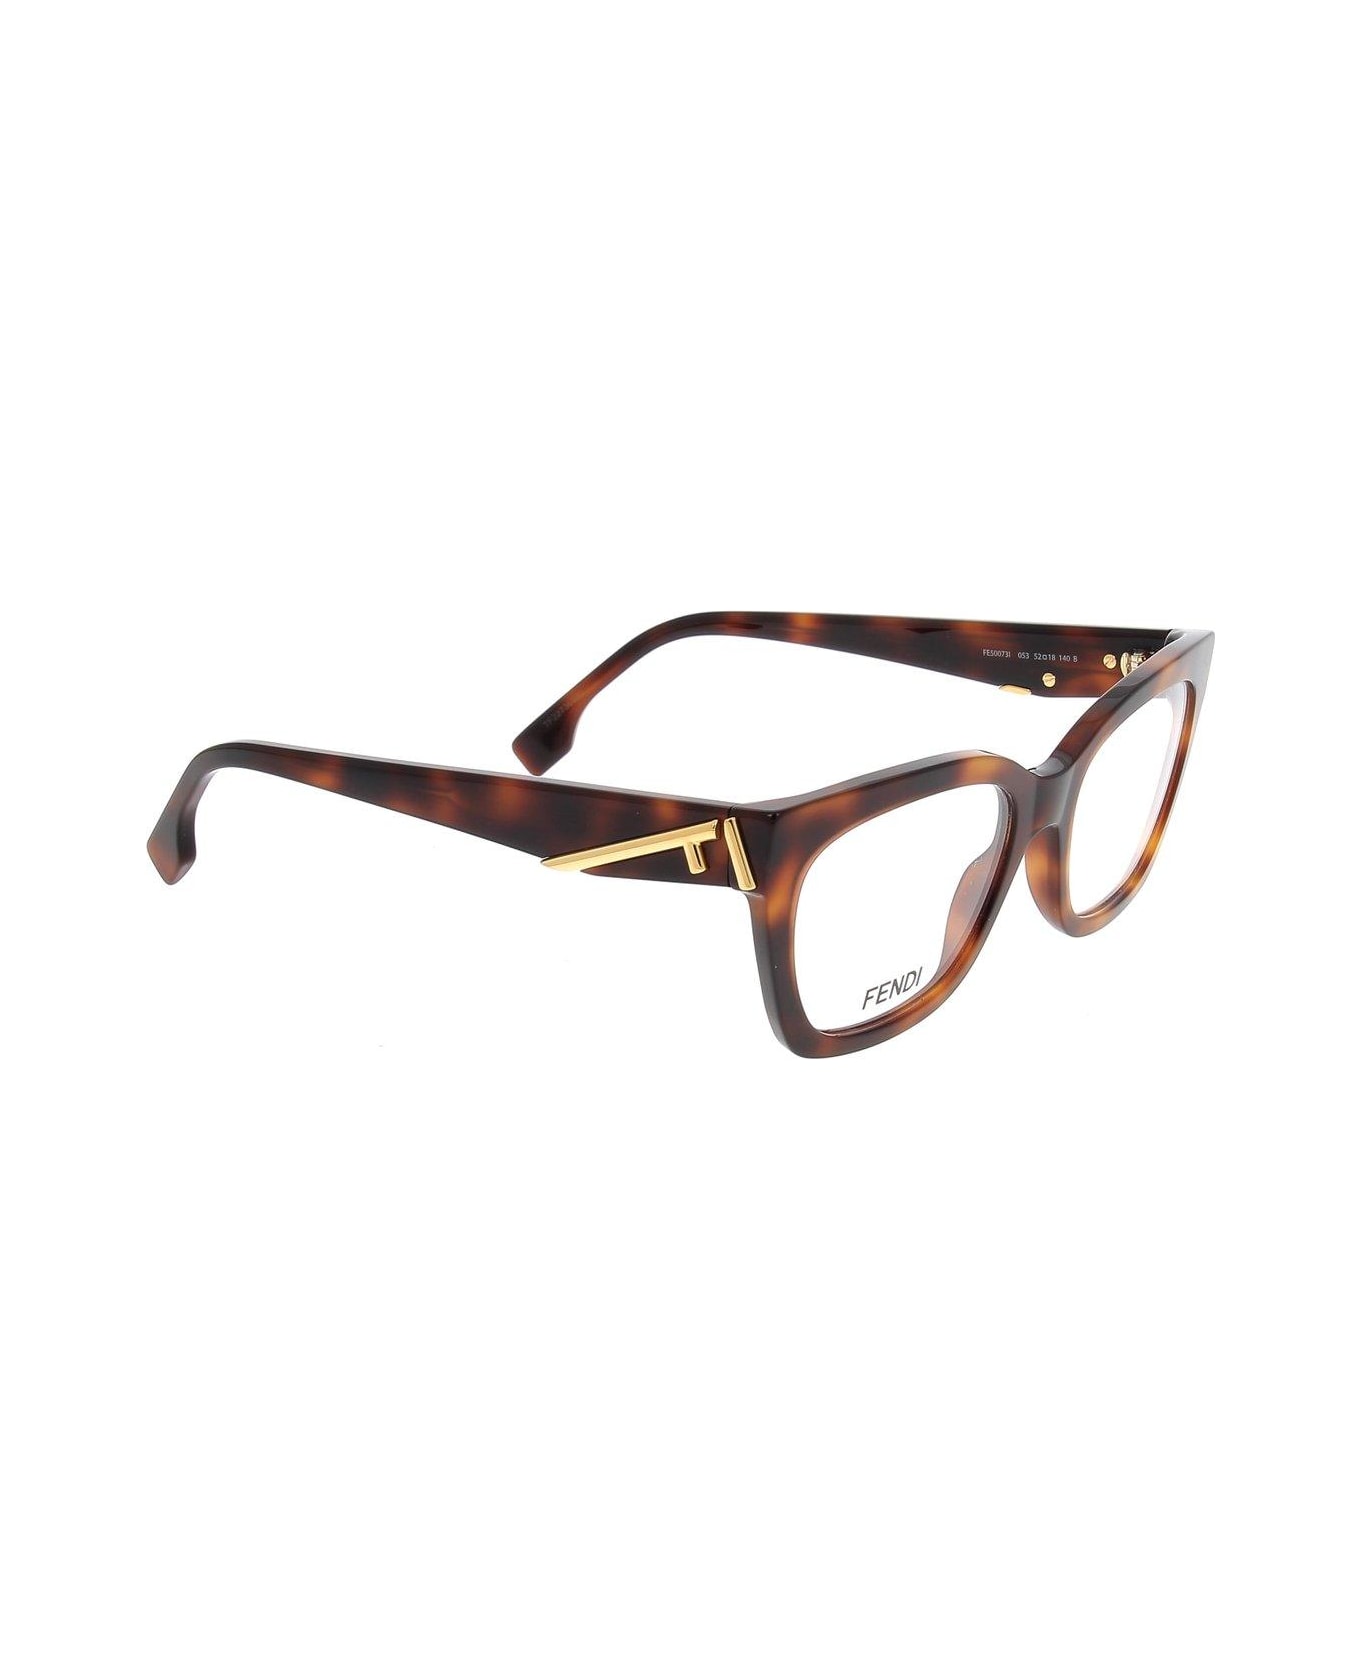 Fendi Eyewear Cat-eye Frame Glasses - 053 アイウェア